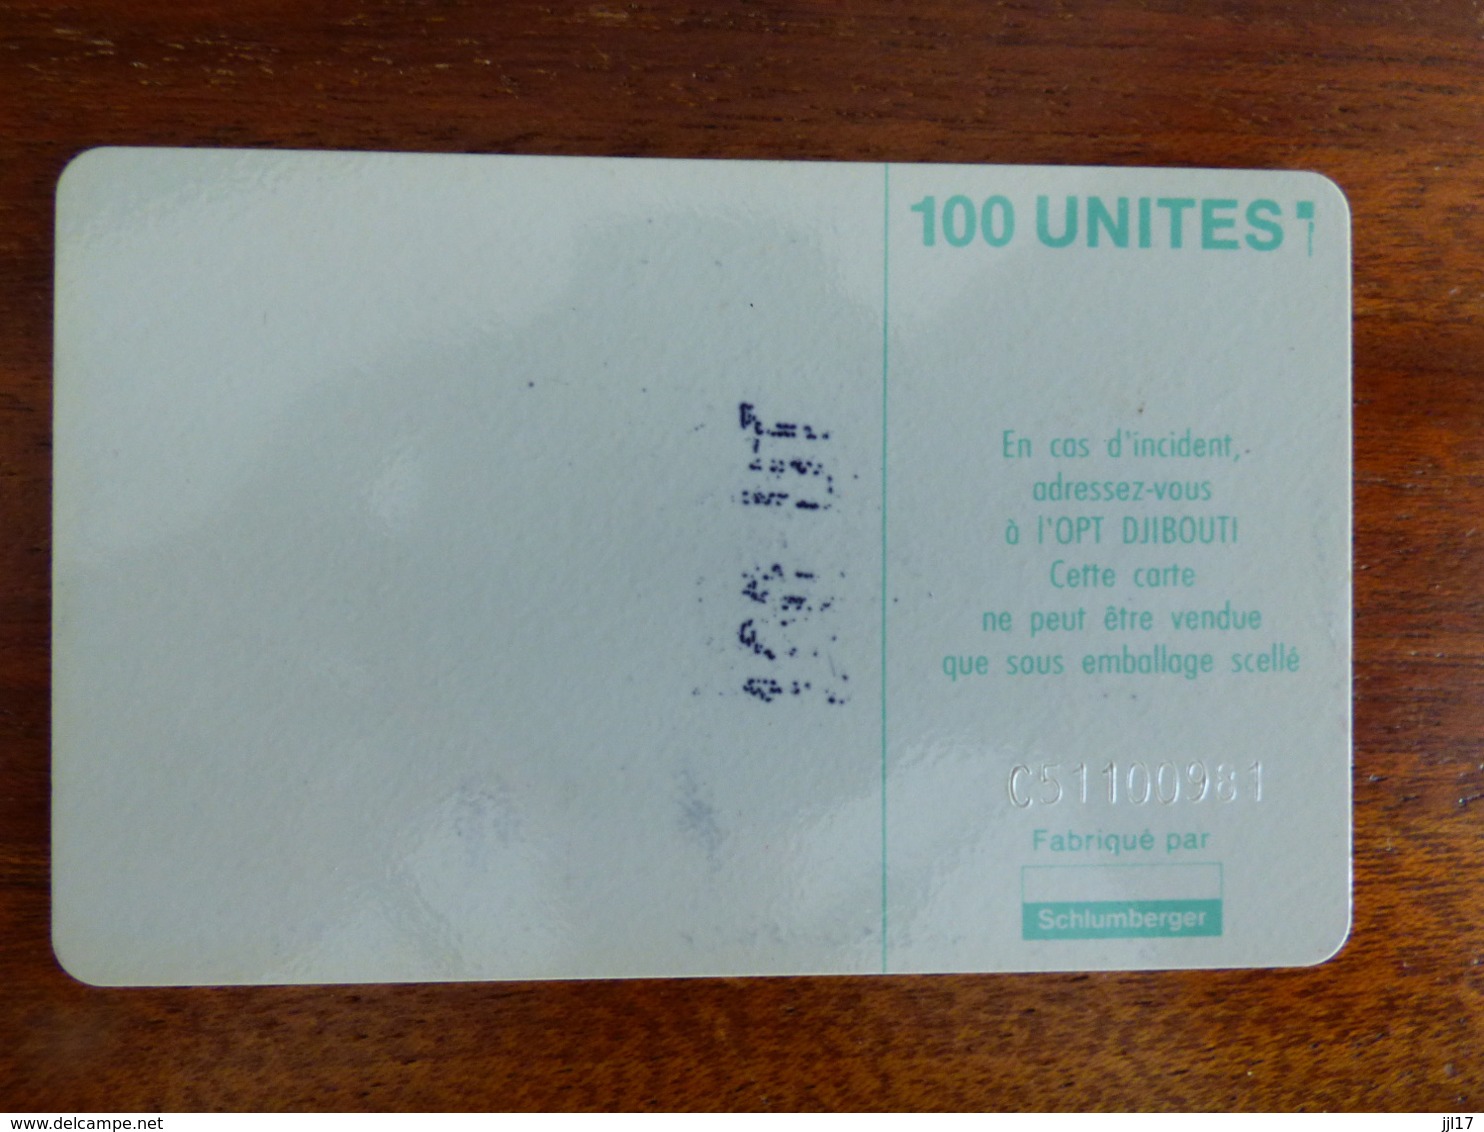 Télécarte De Djibouti - 100U - SC5 ISO - Sans Trou Au Verso - N° C51100981 - Djibouti